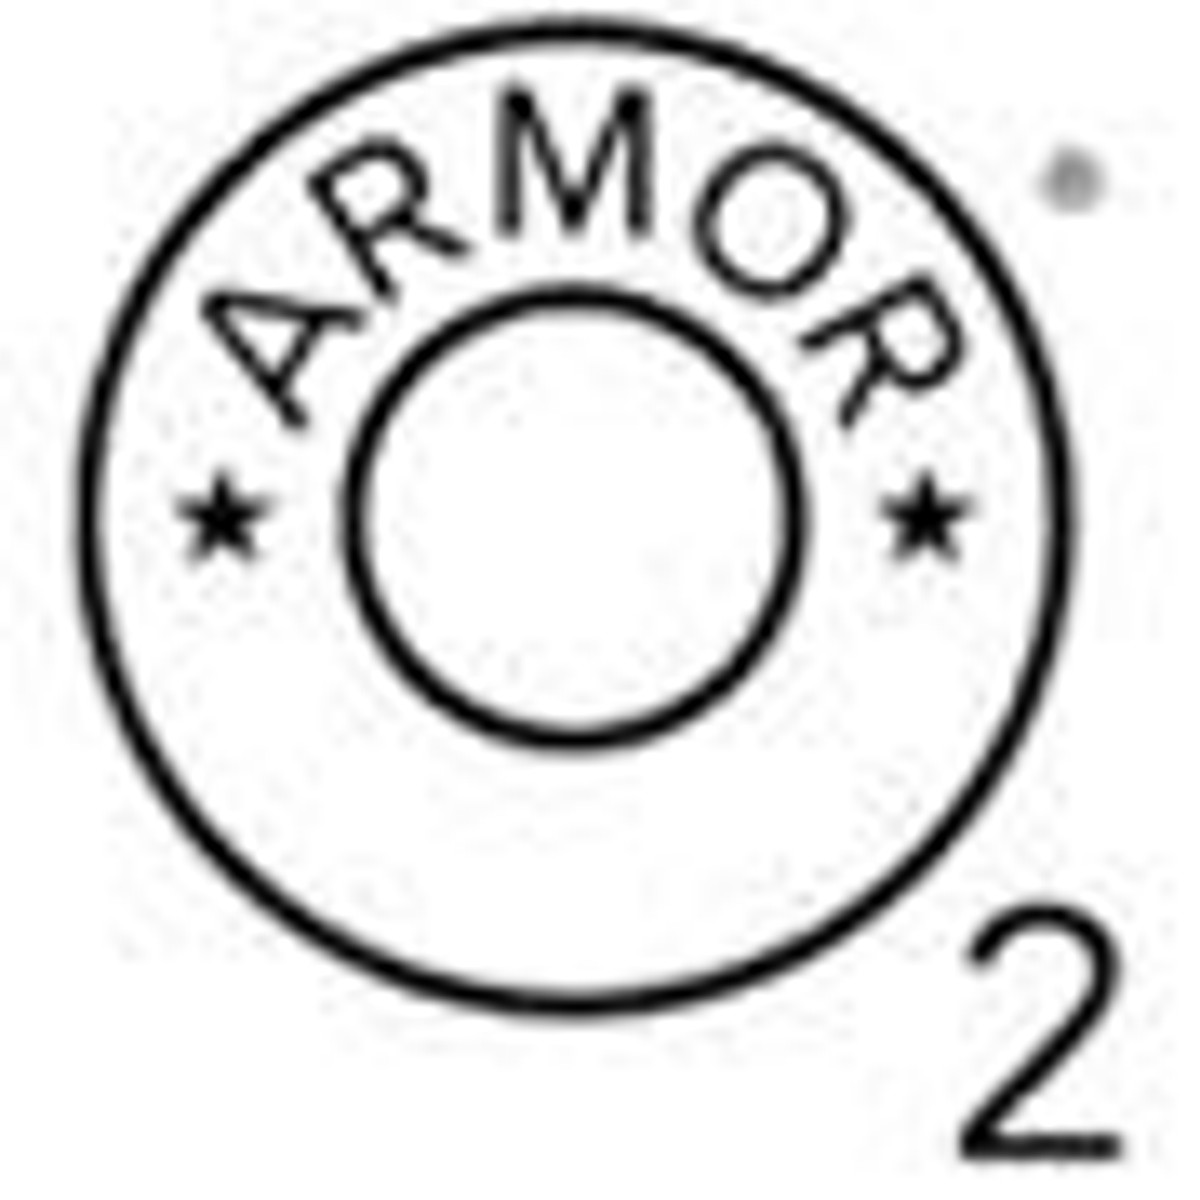 O2 Armor